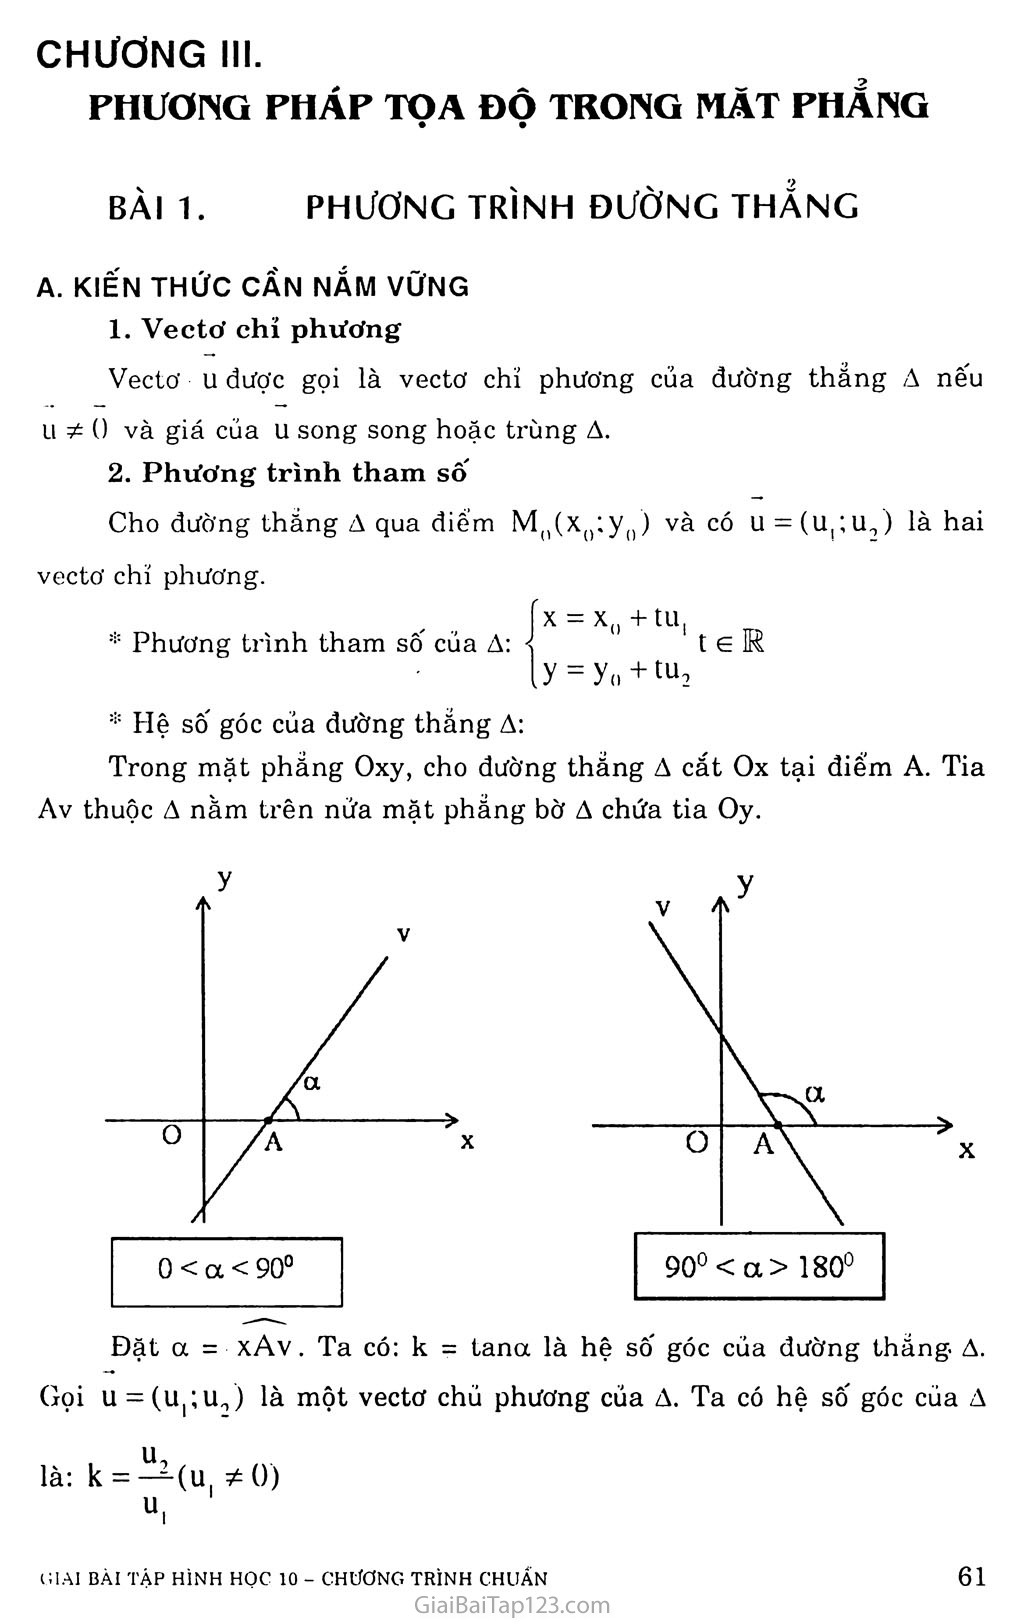 Bài 1. Phương trình đường thẳng trang 1